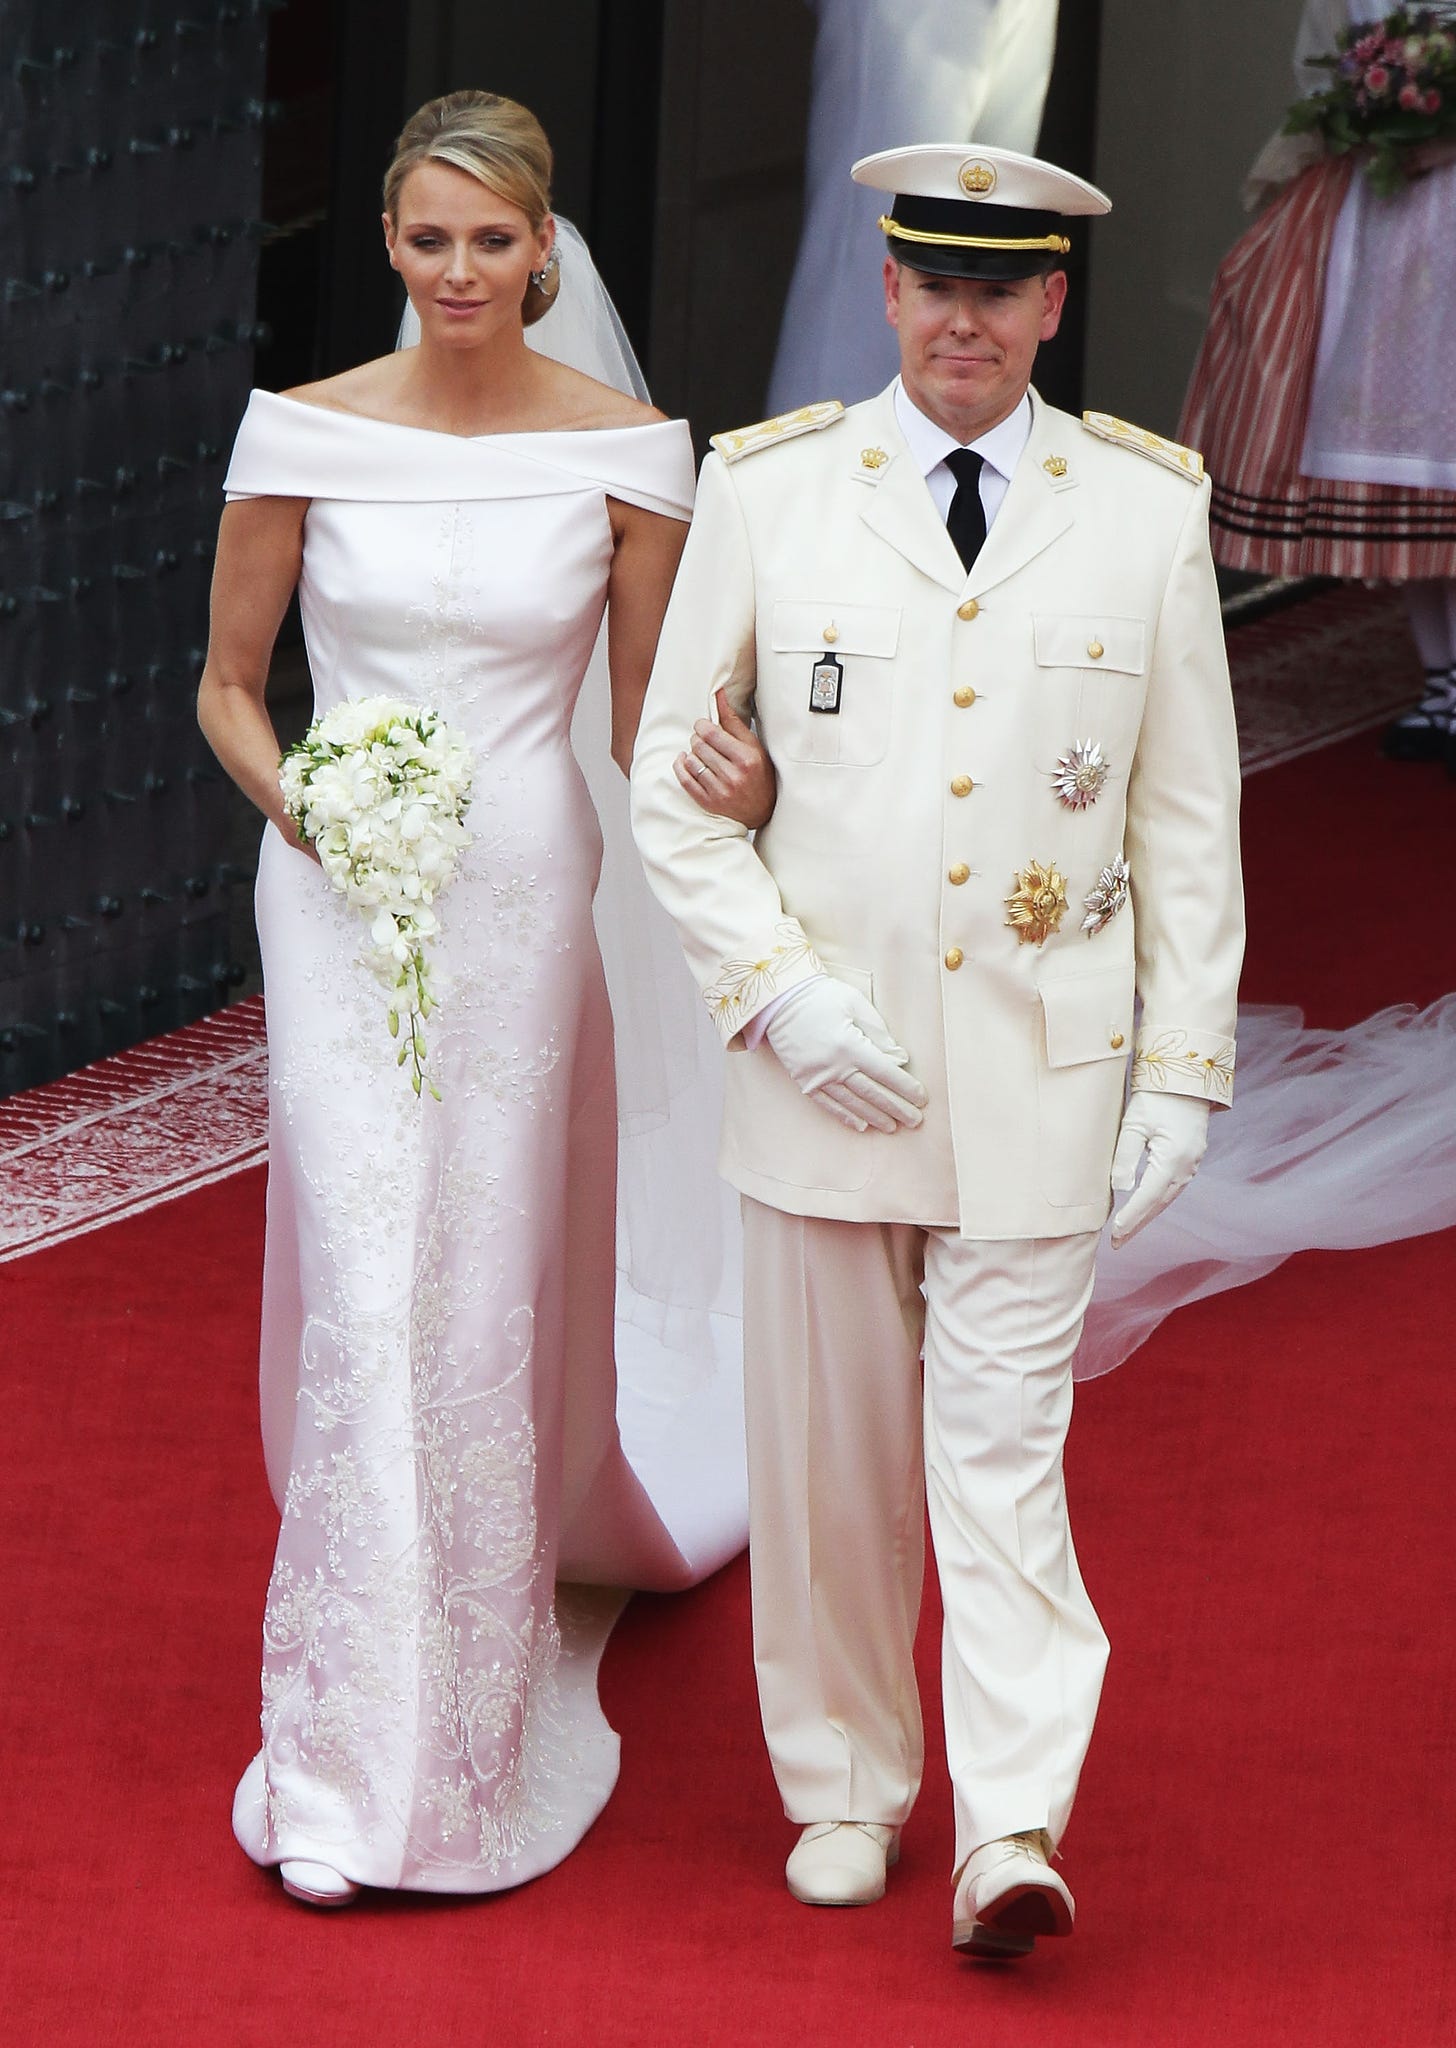 Princess Charlene and Prince Albert on their wedding day